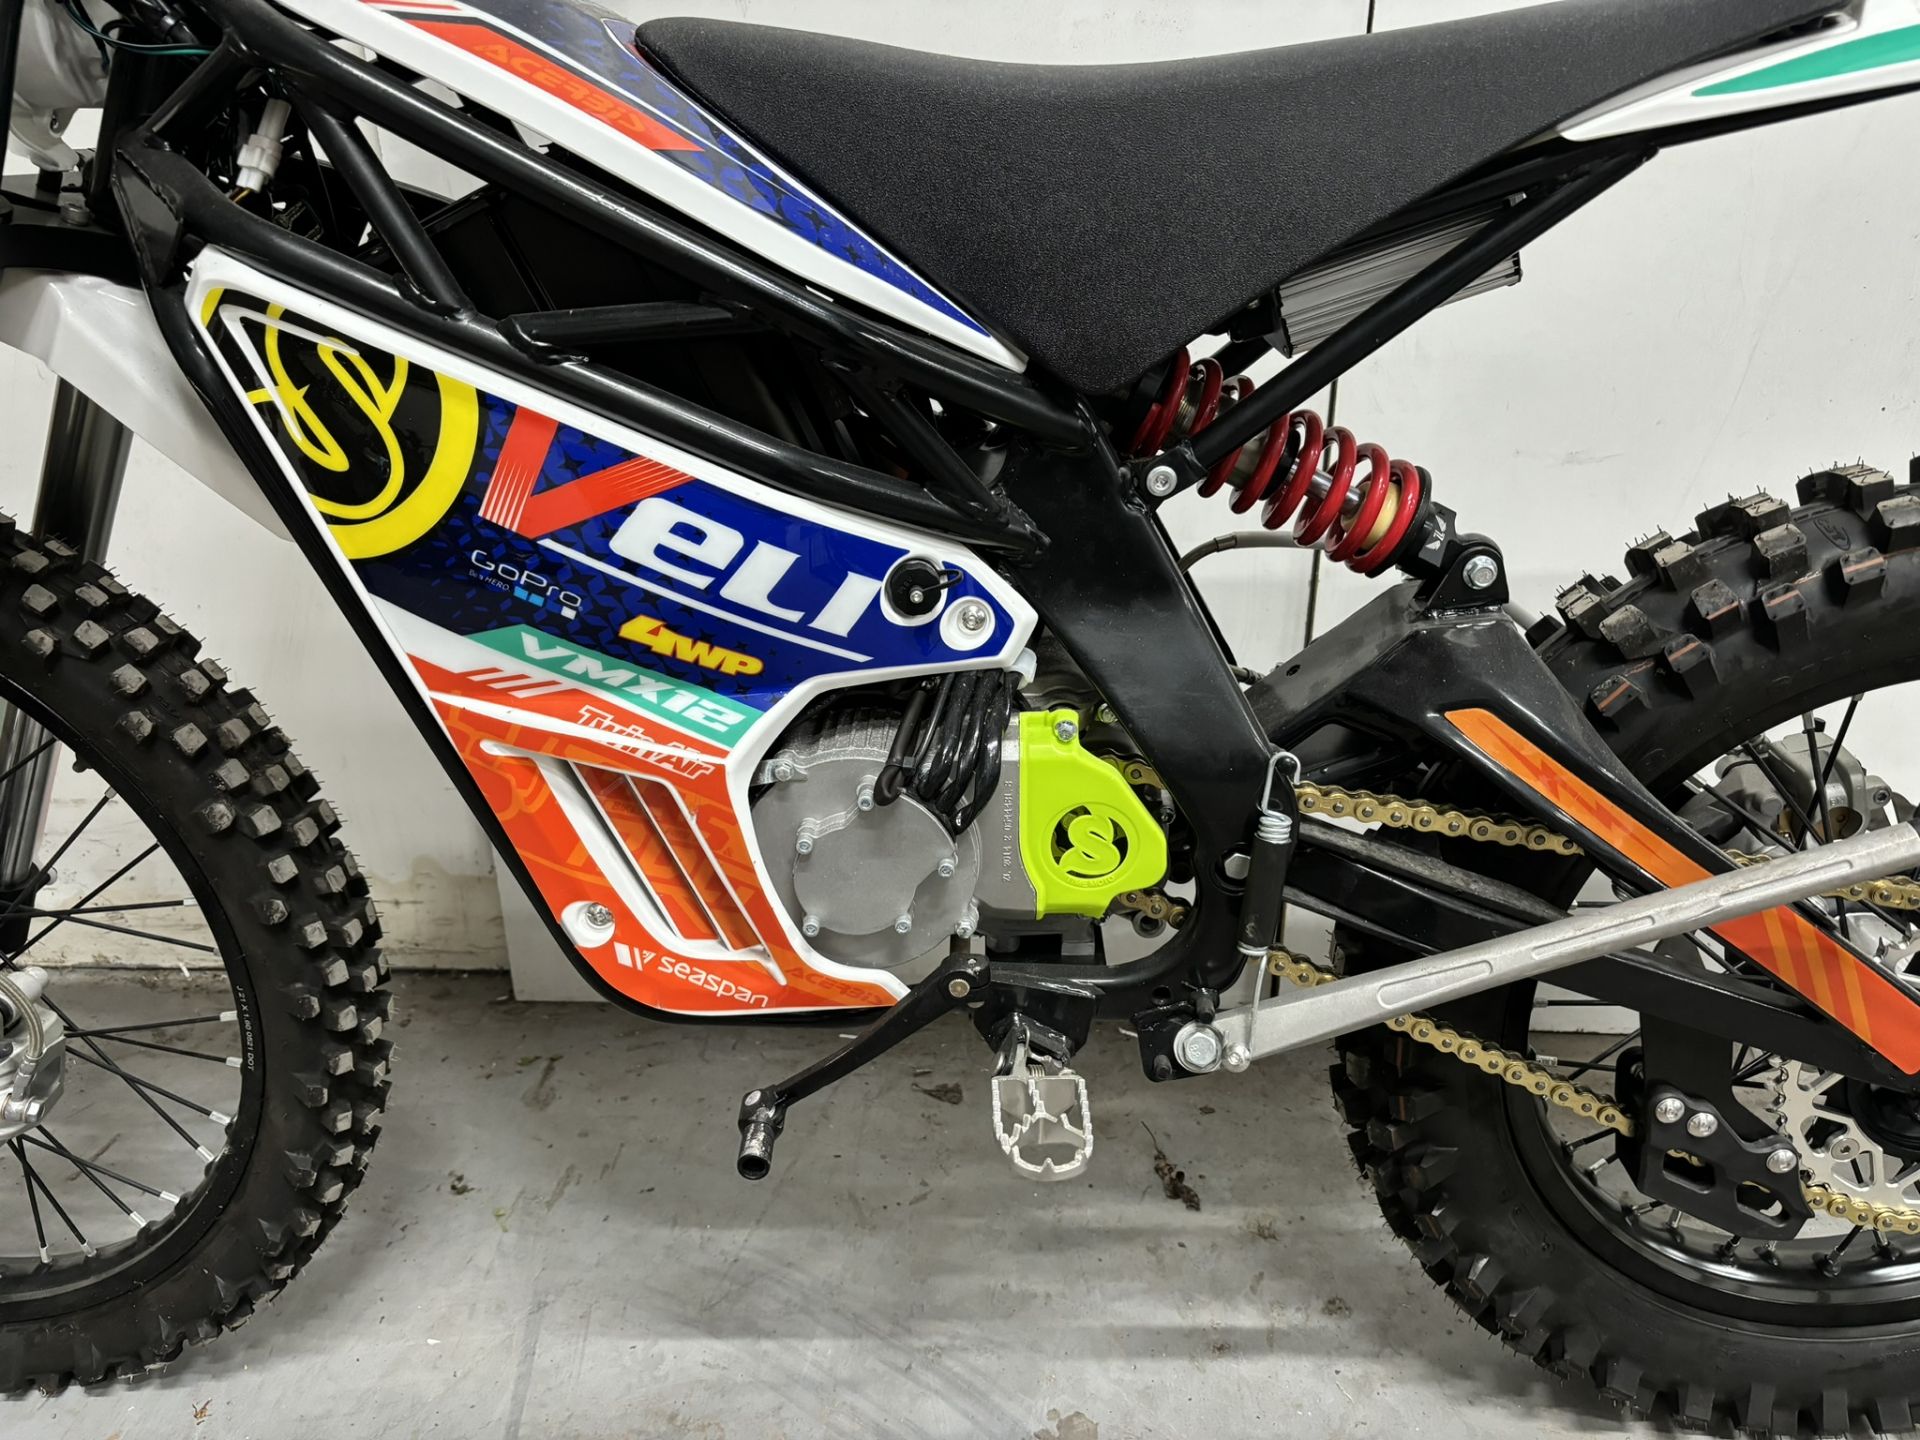 Velimotor VMX12 Electric Motorcycle / Dirt Bike - Image 3 of 24